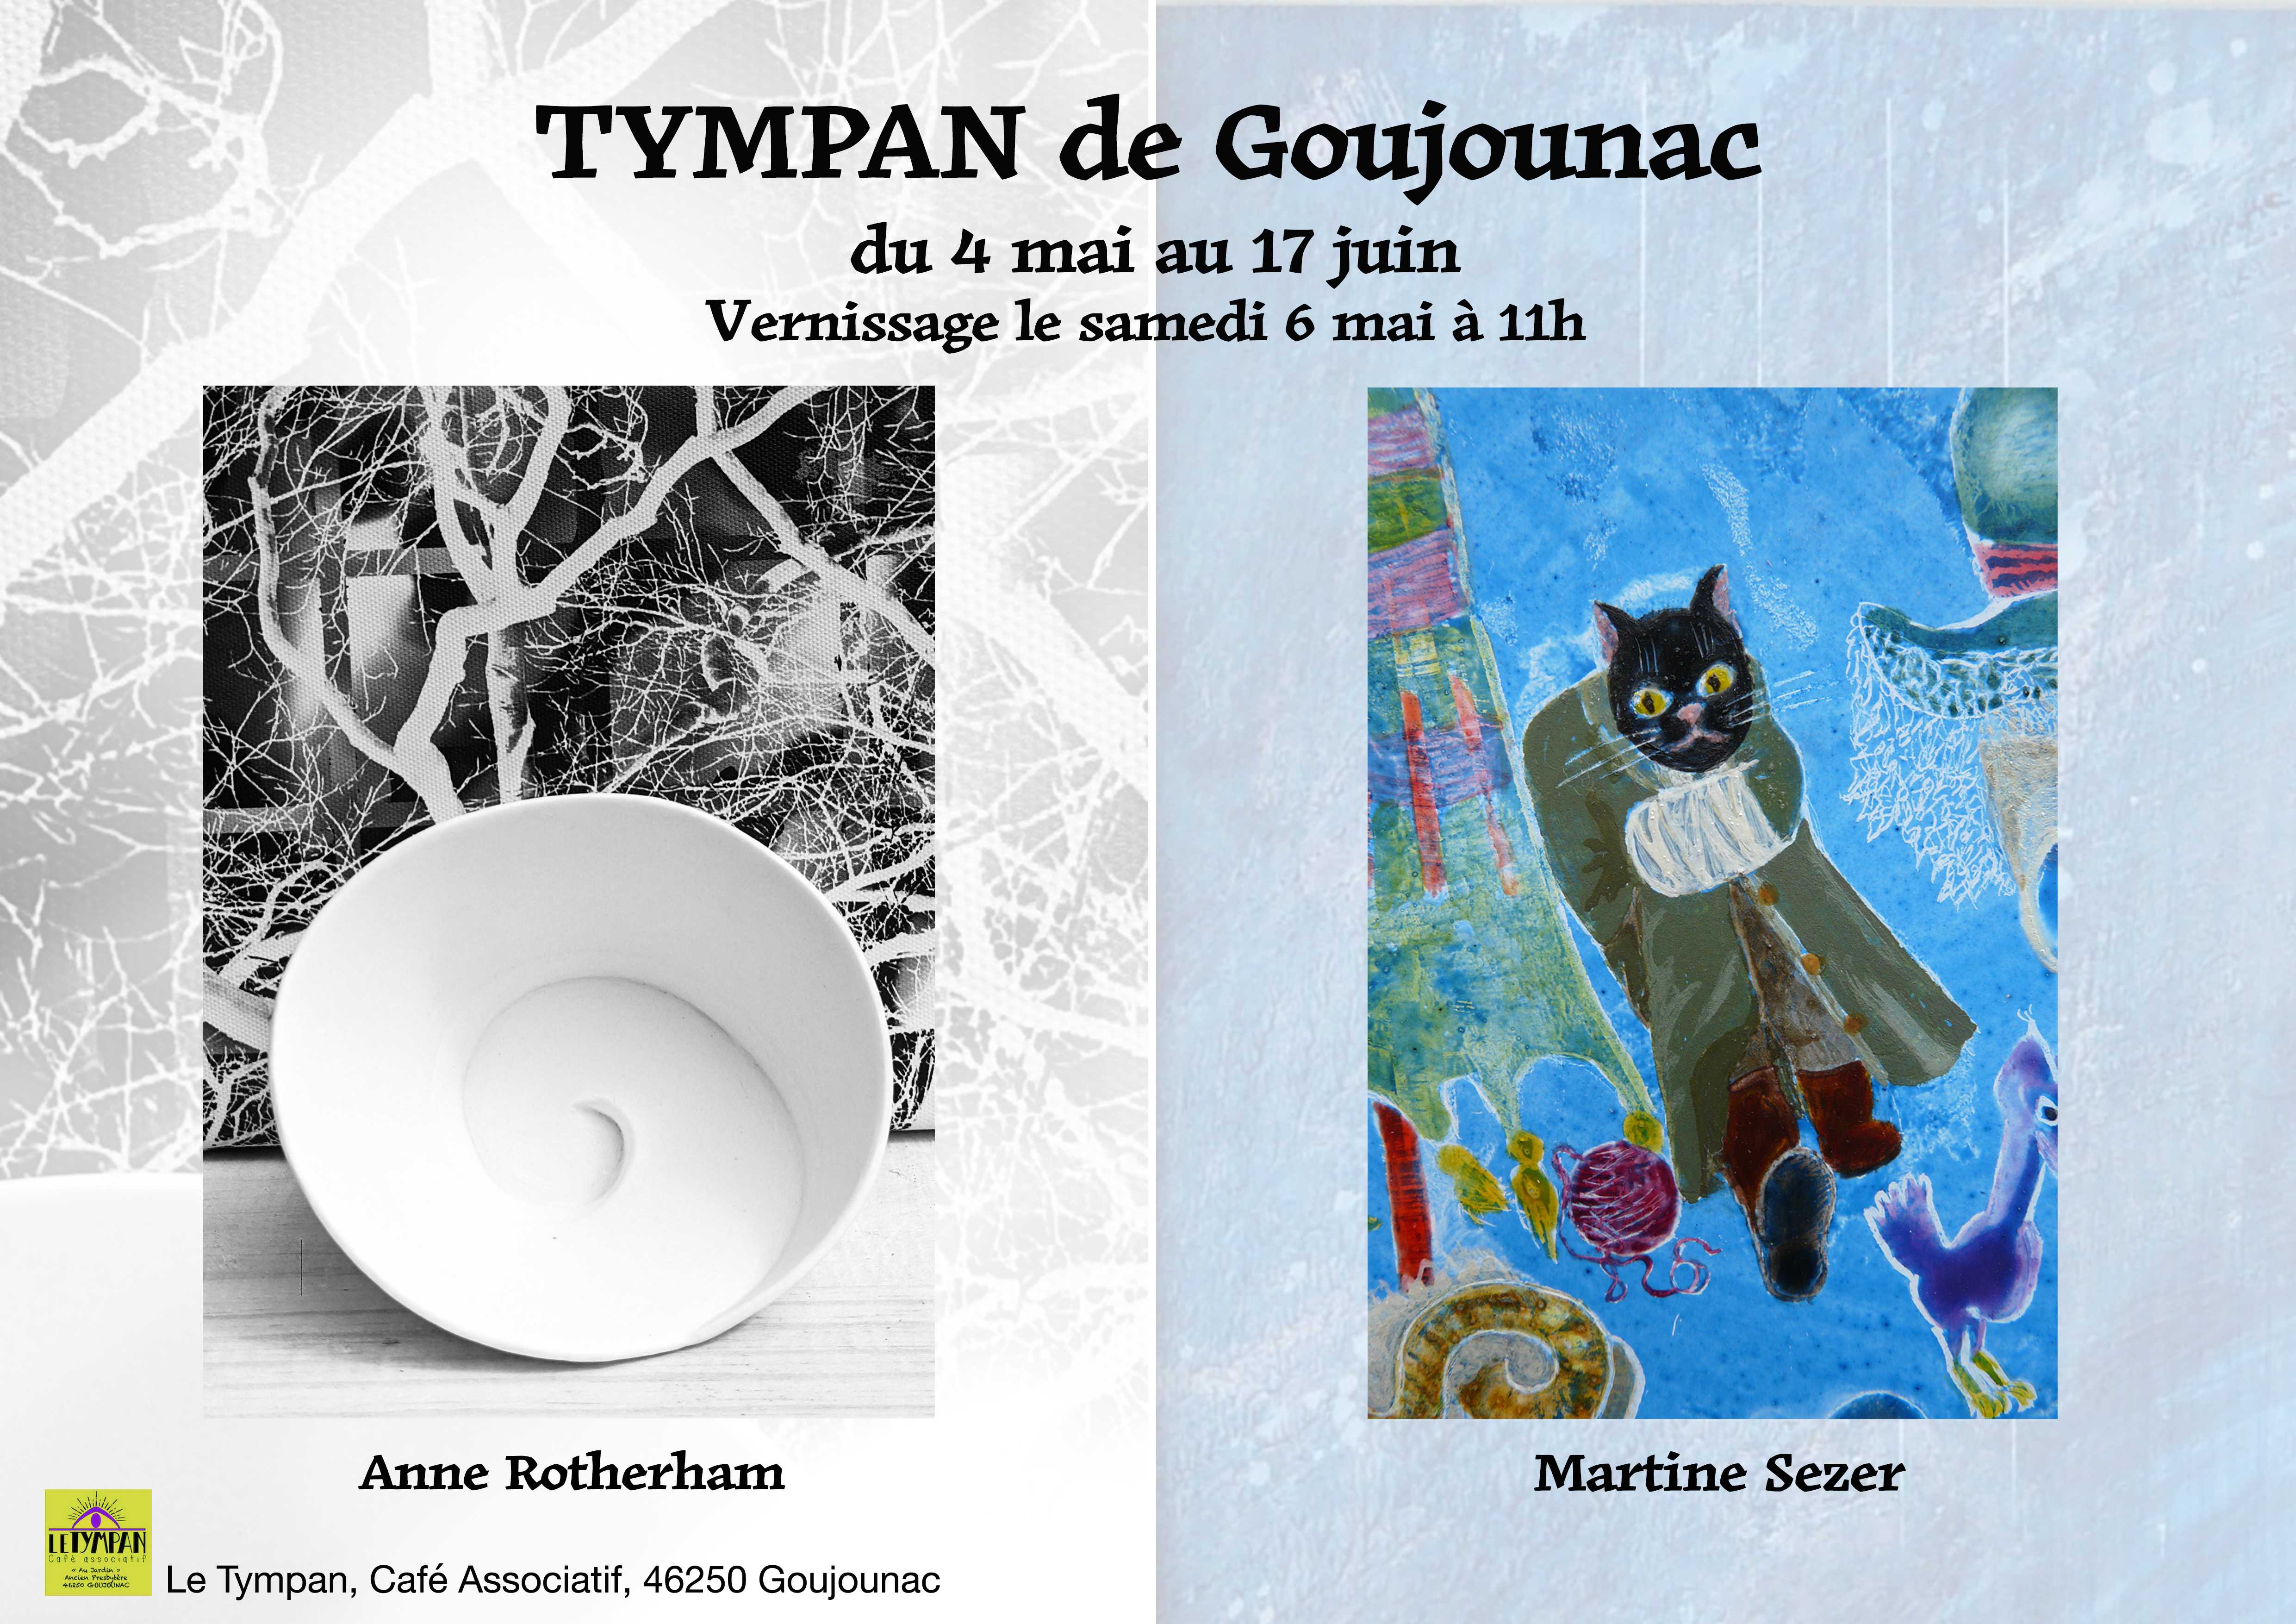 Figeac : Exposition des céramiques d'Anne Rotherham  et des peintures de Martine Sezer au Tympan